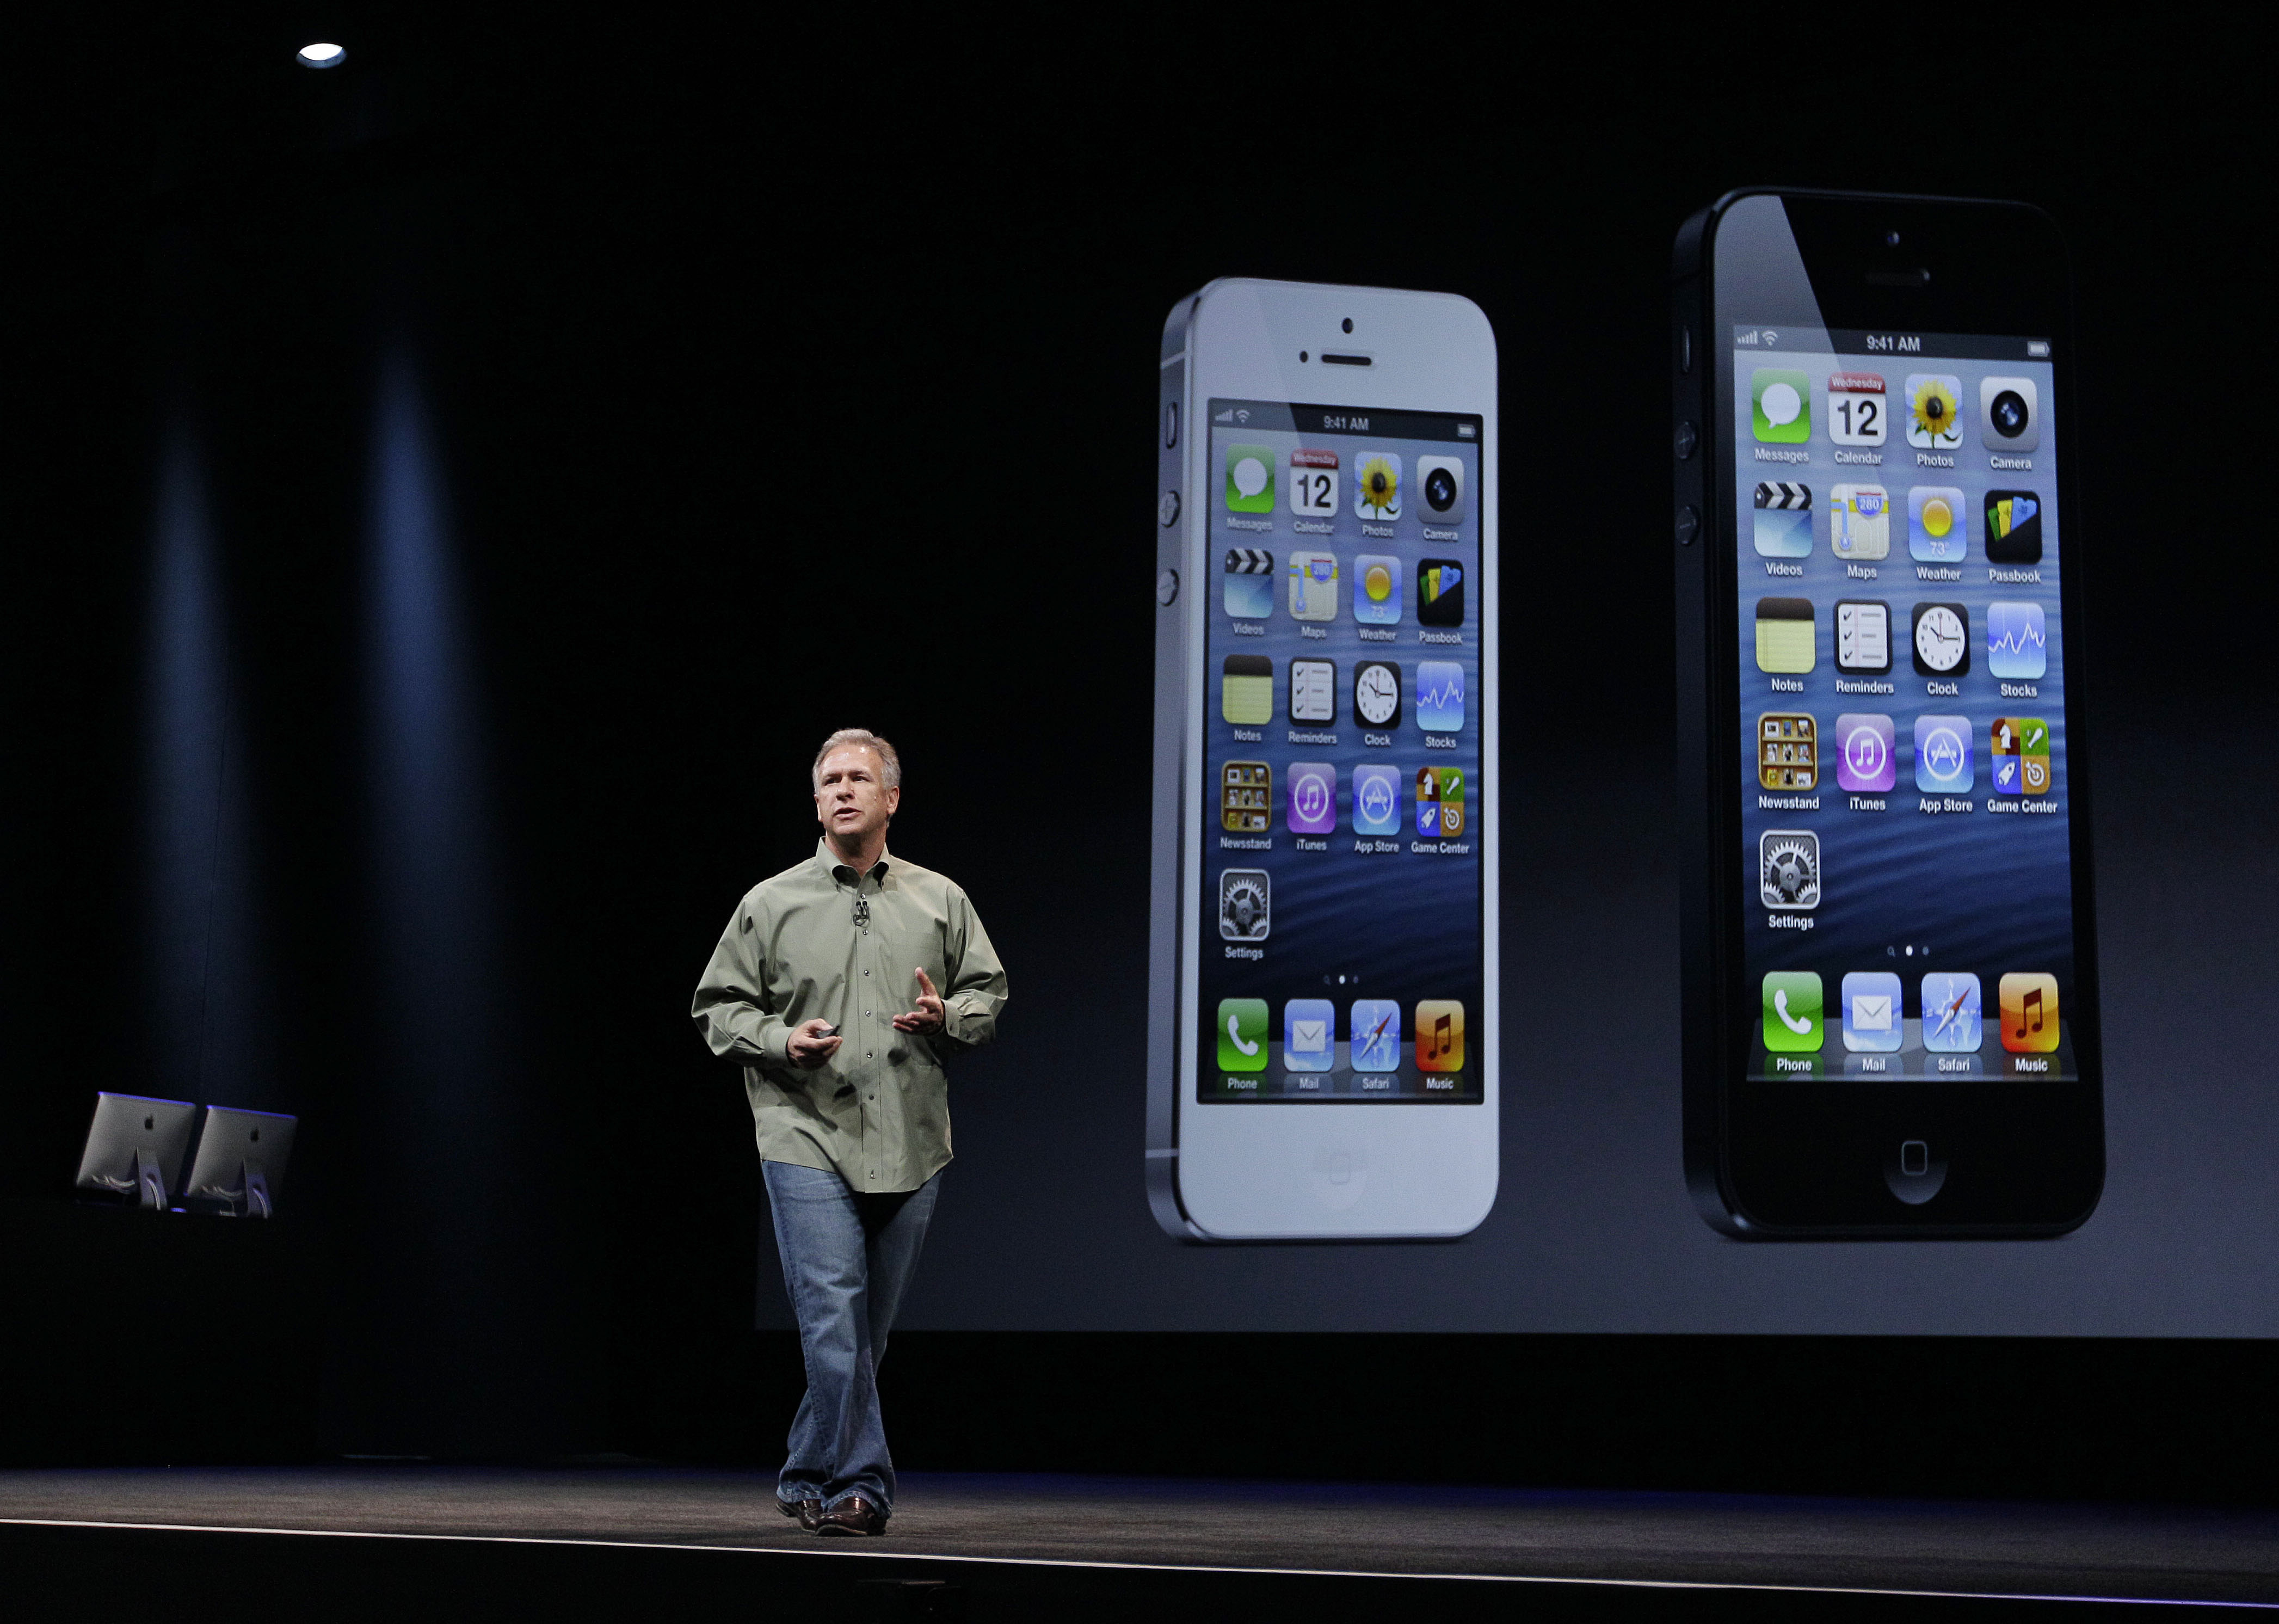 iPhone 5, iOS 6, νέα iPod και iTunes ανακοίνωσε η Apple